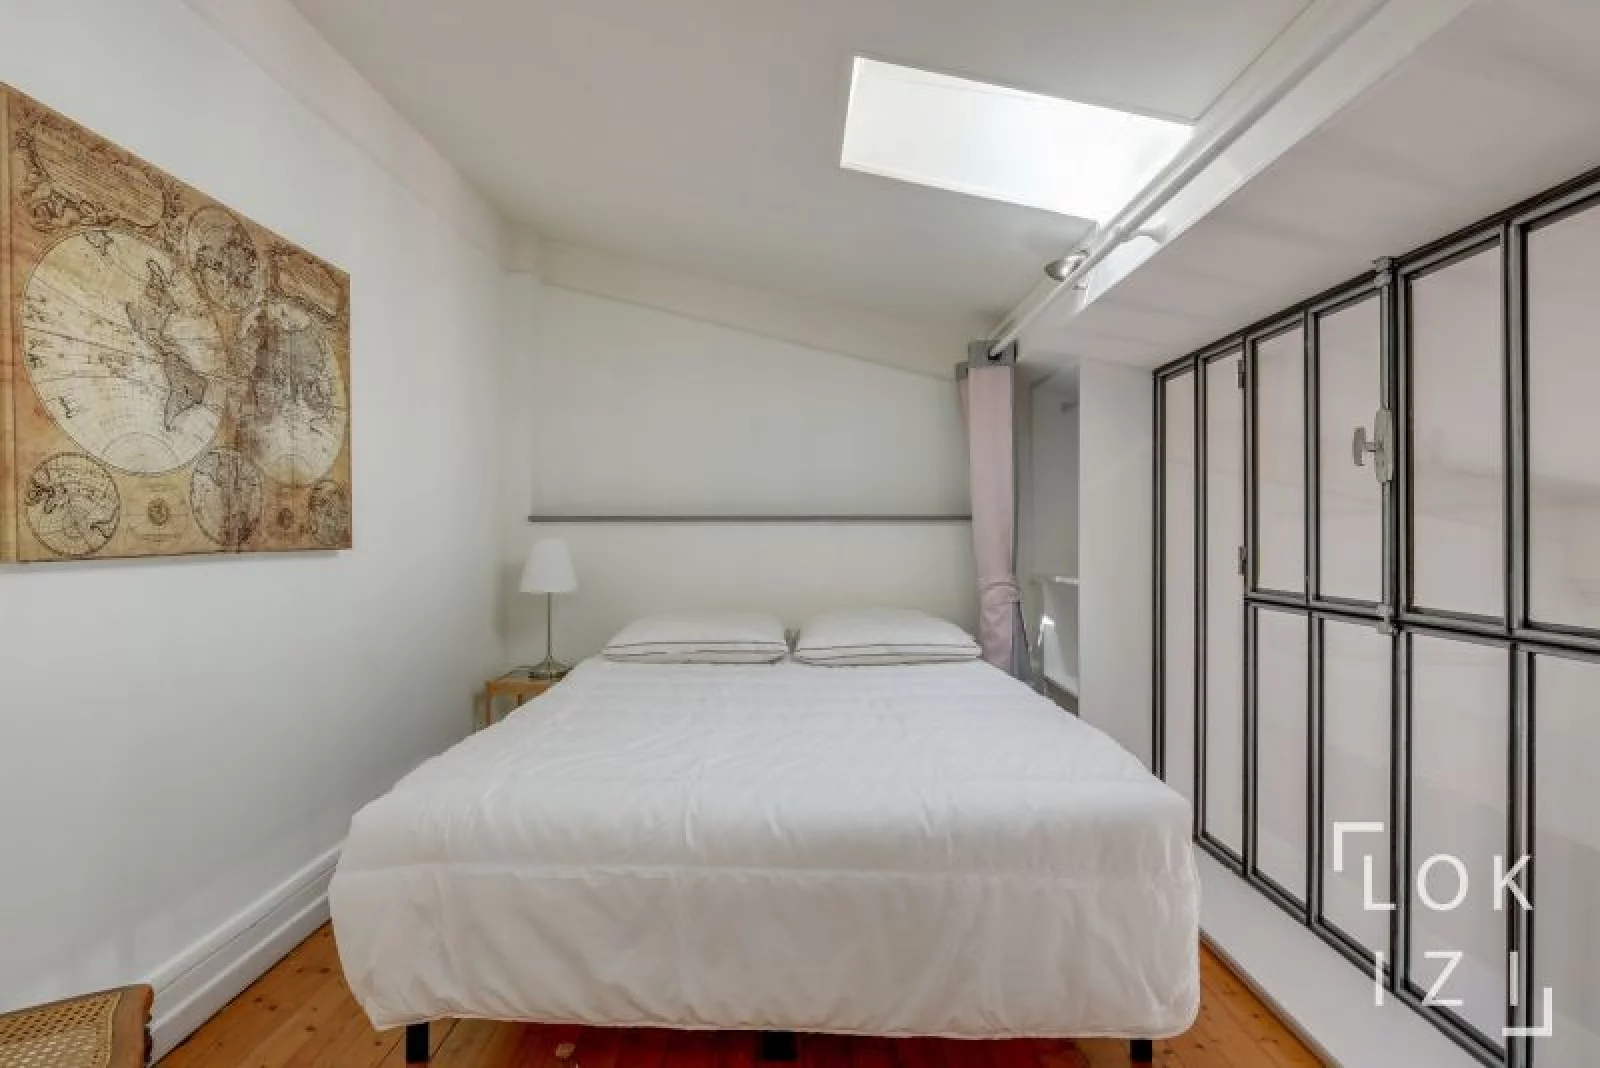 Location appartement meublé 2 pièces 59m² (Bordeaux -Chartrons)